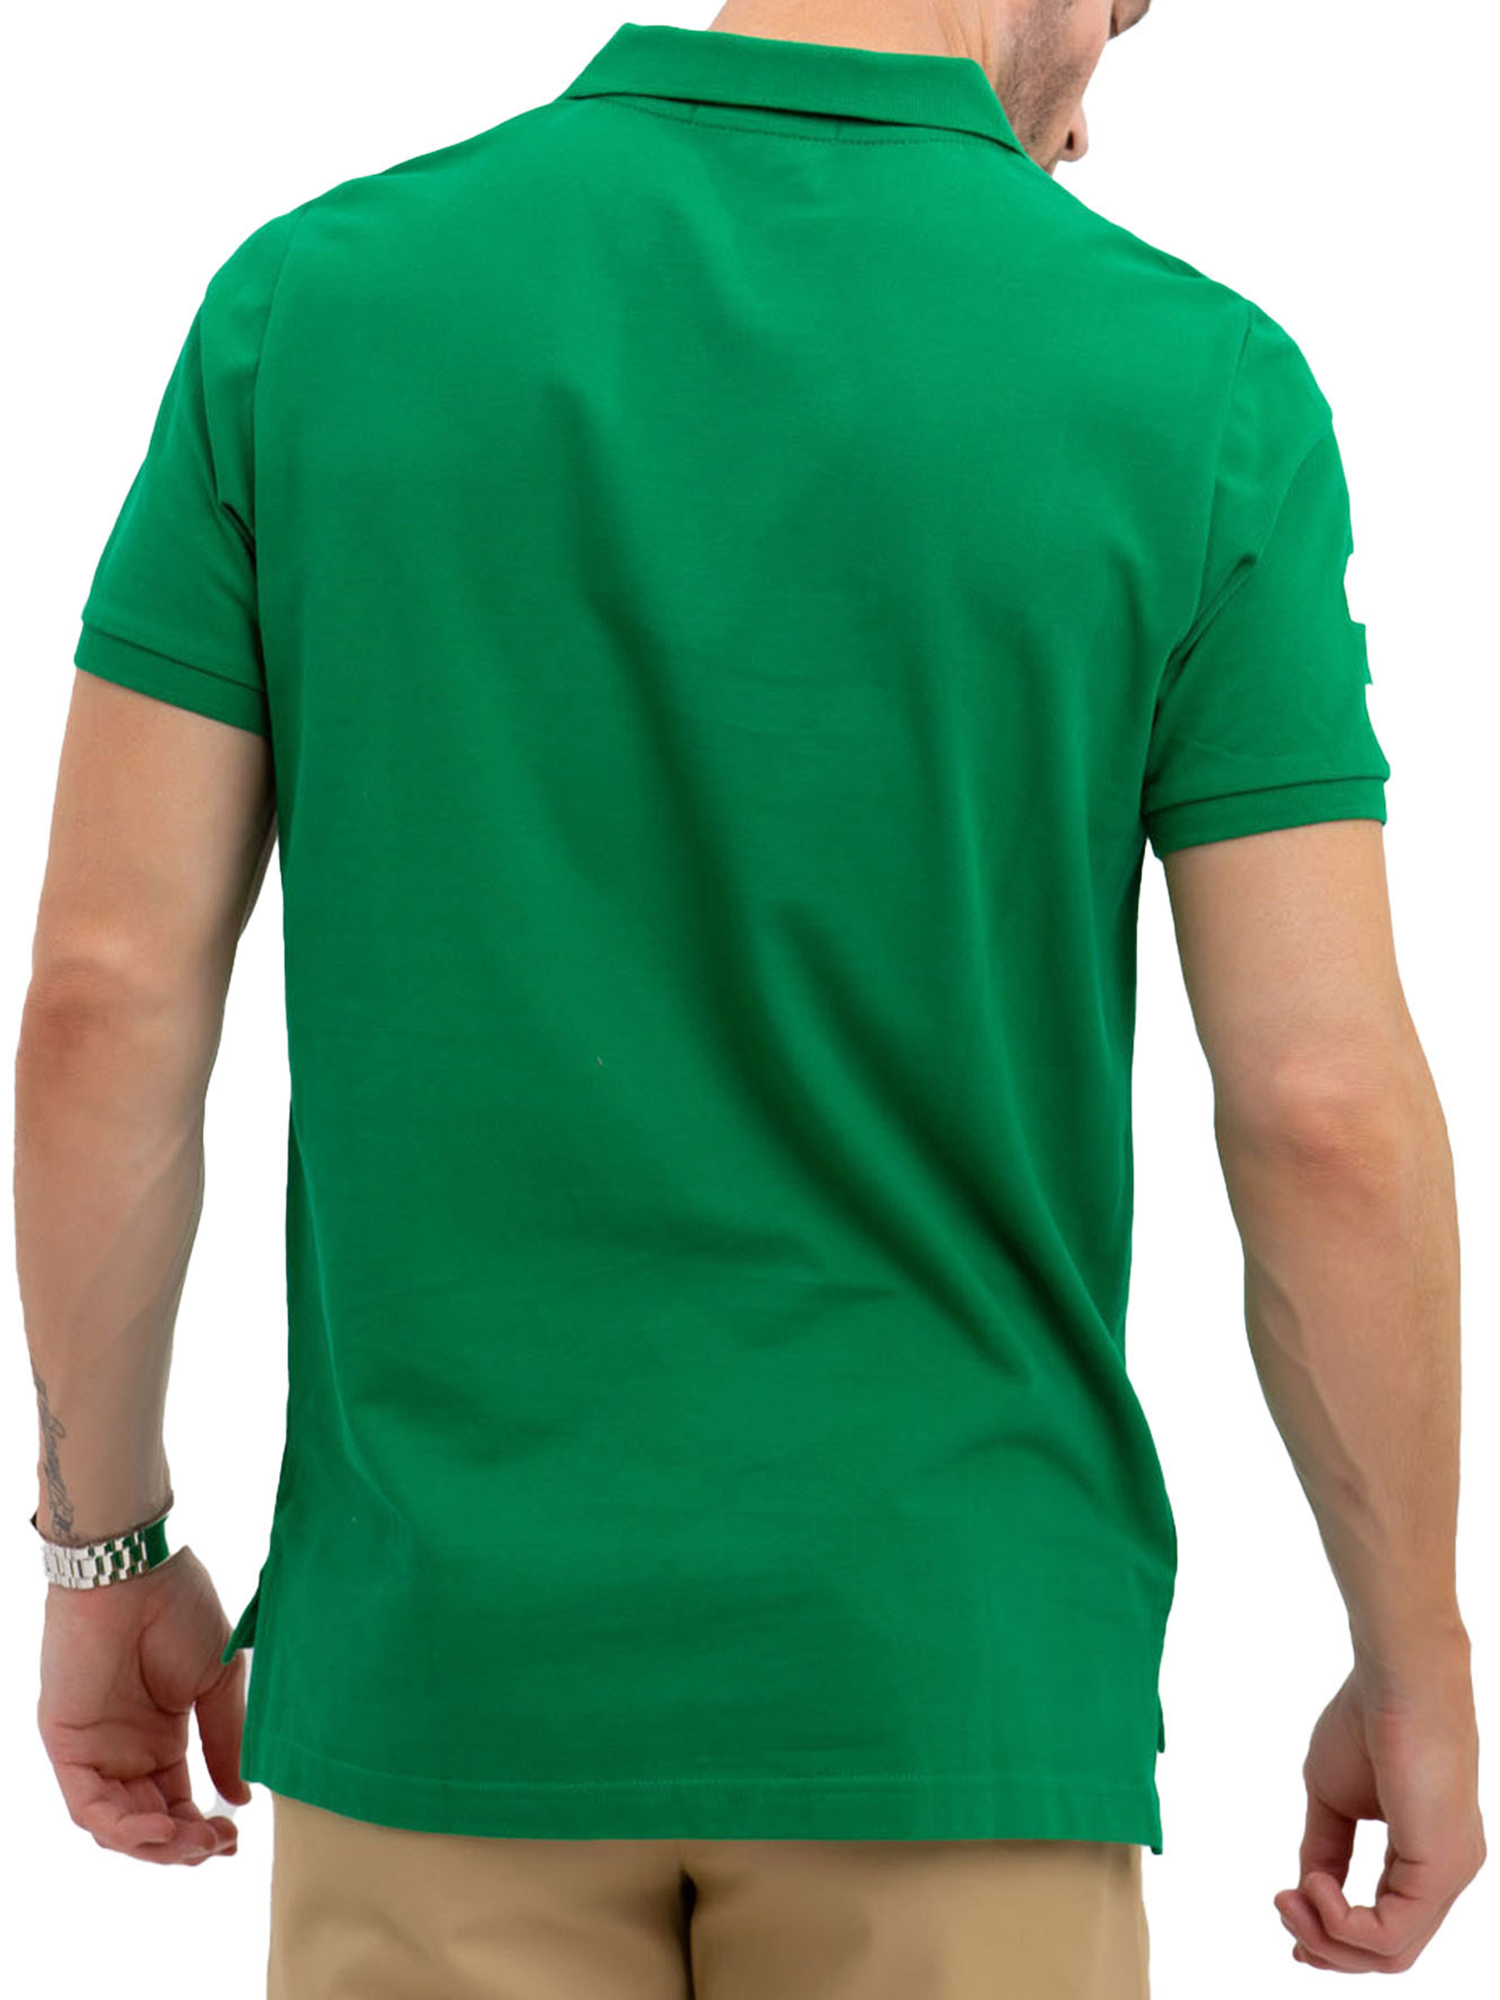 U.S. Polo Assn. Men's Solid Pique Polo Shirt - image 3 of 3